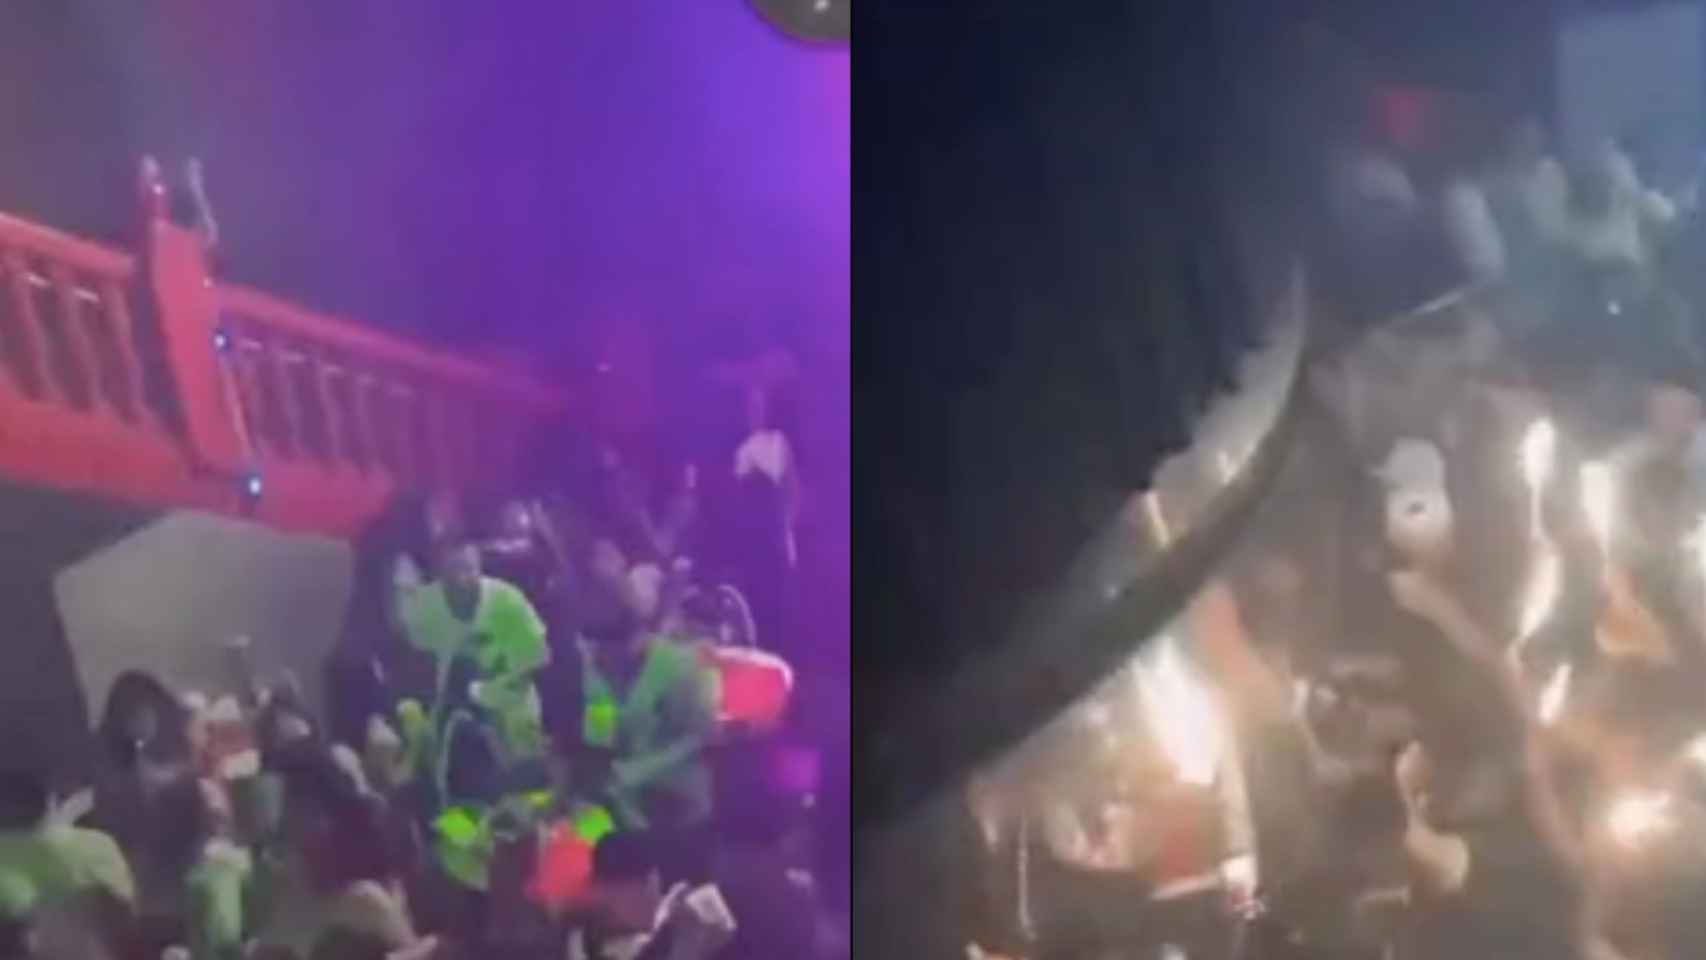 Fiestas en la discoteca Brisas de Luxe a pesar de las restricciones por la pandemia / BCNLEGENDS